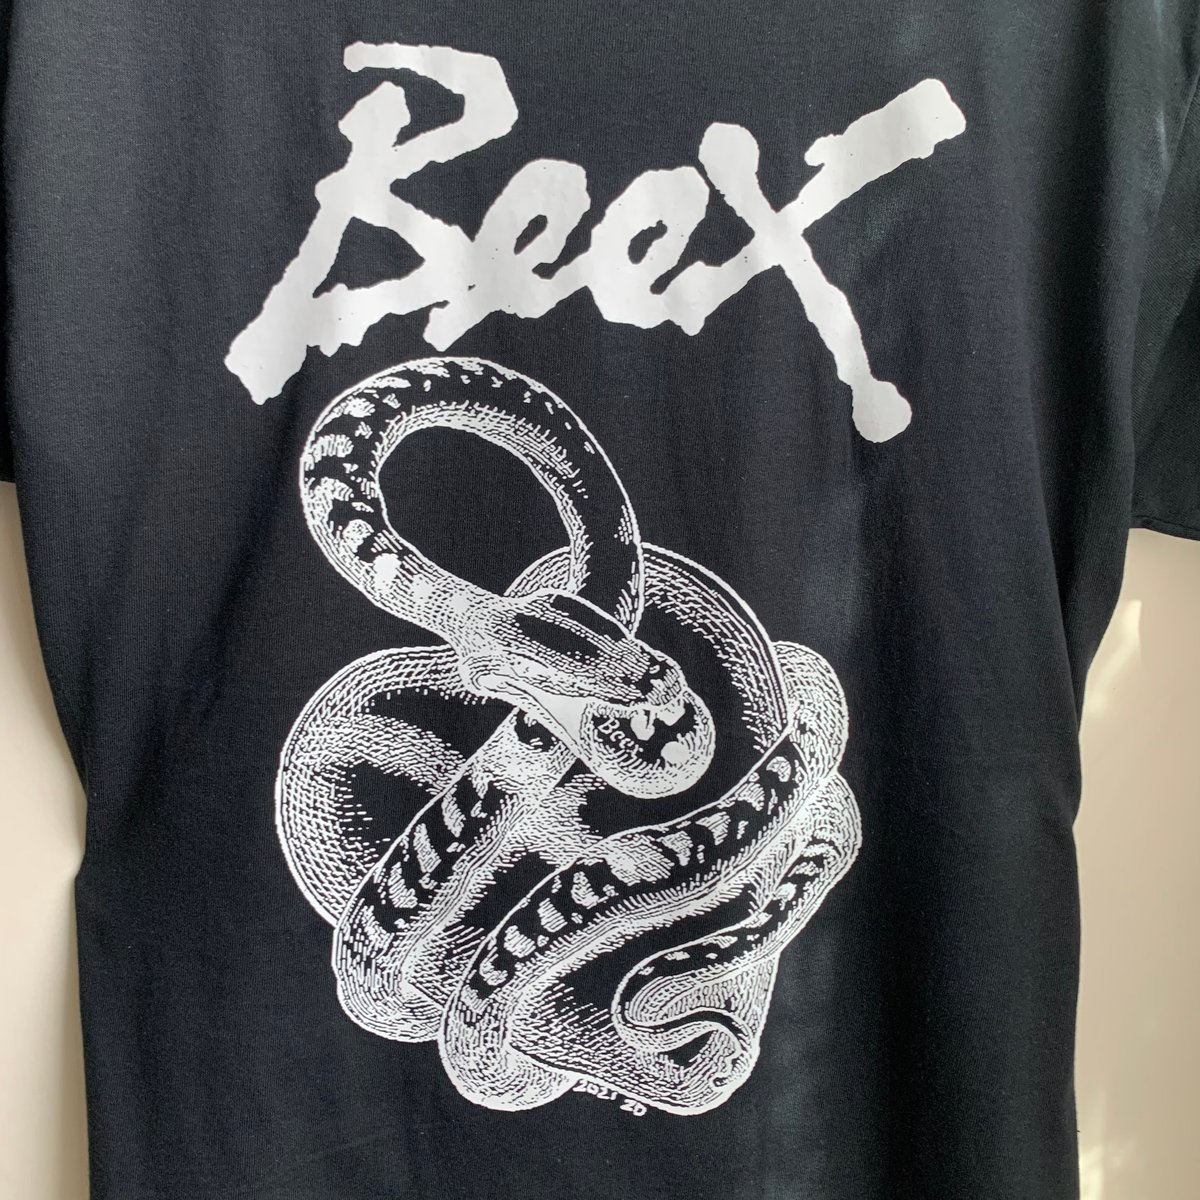 Image of Beex T shirt - Snake logo - Black - FREE SHIPPING